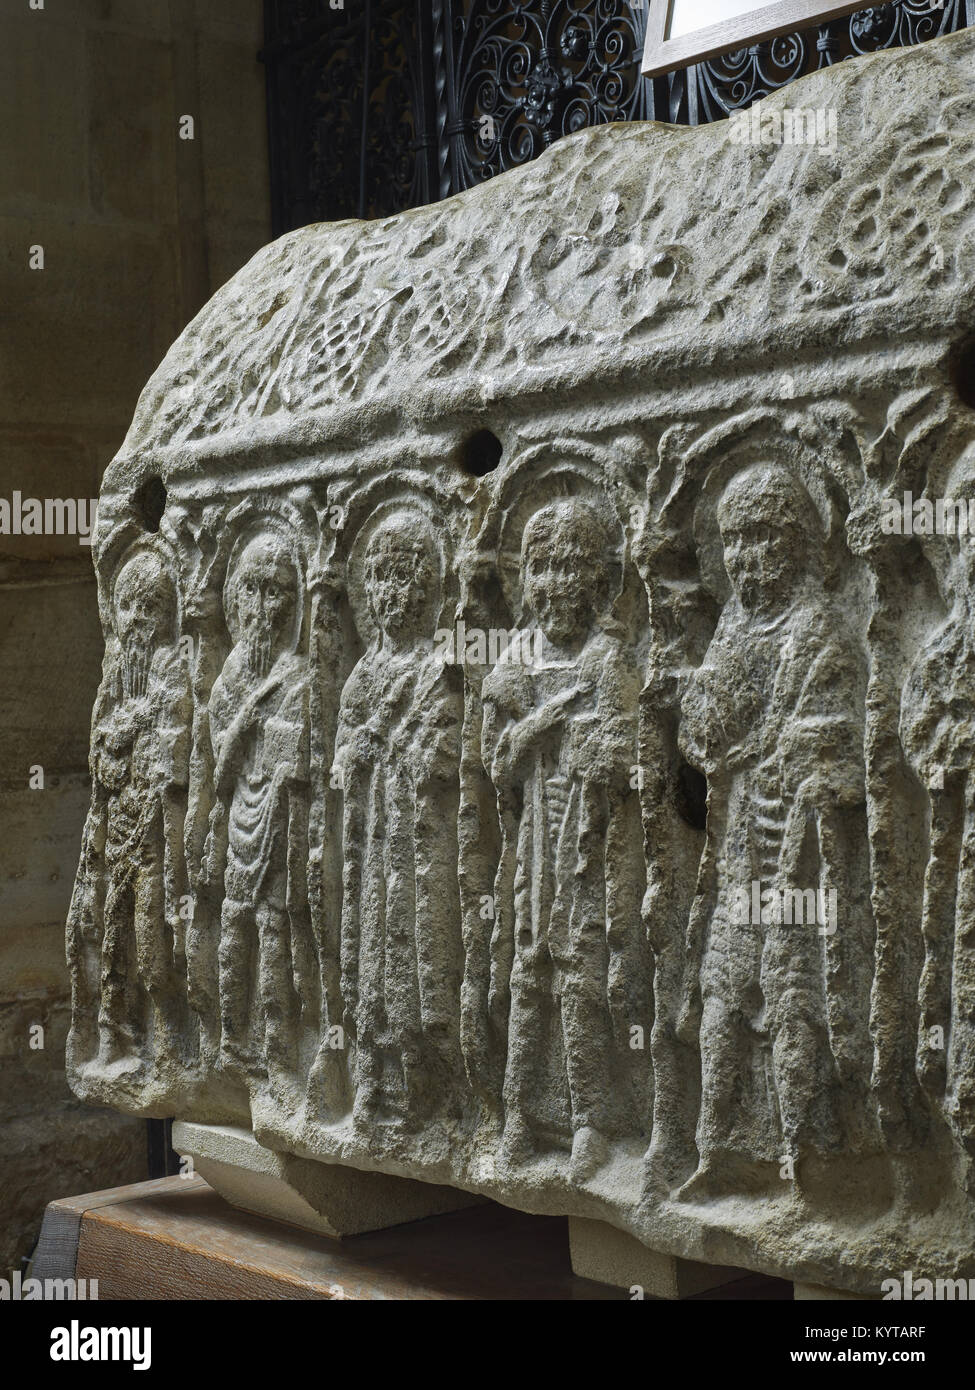 La catedral de Peterborough. Esculpidos en piedra del siglo octavo santuario conocido como la piedra de Hedda, pensado para mostrar a Cristo con sus Apóstoles, en una galería. Foto de stock